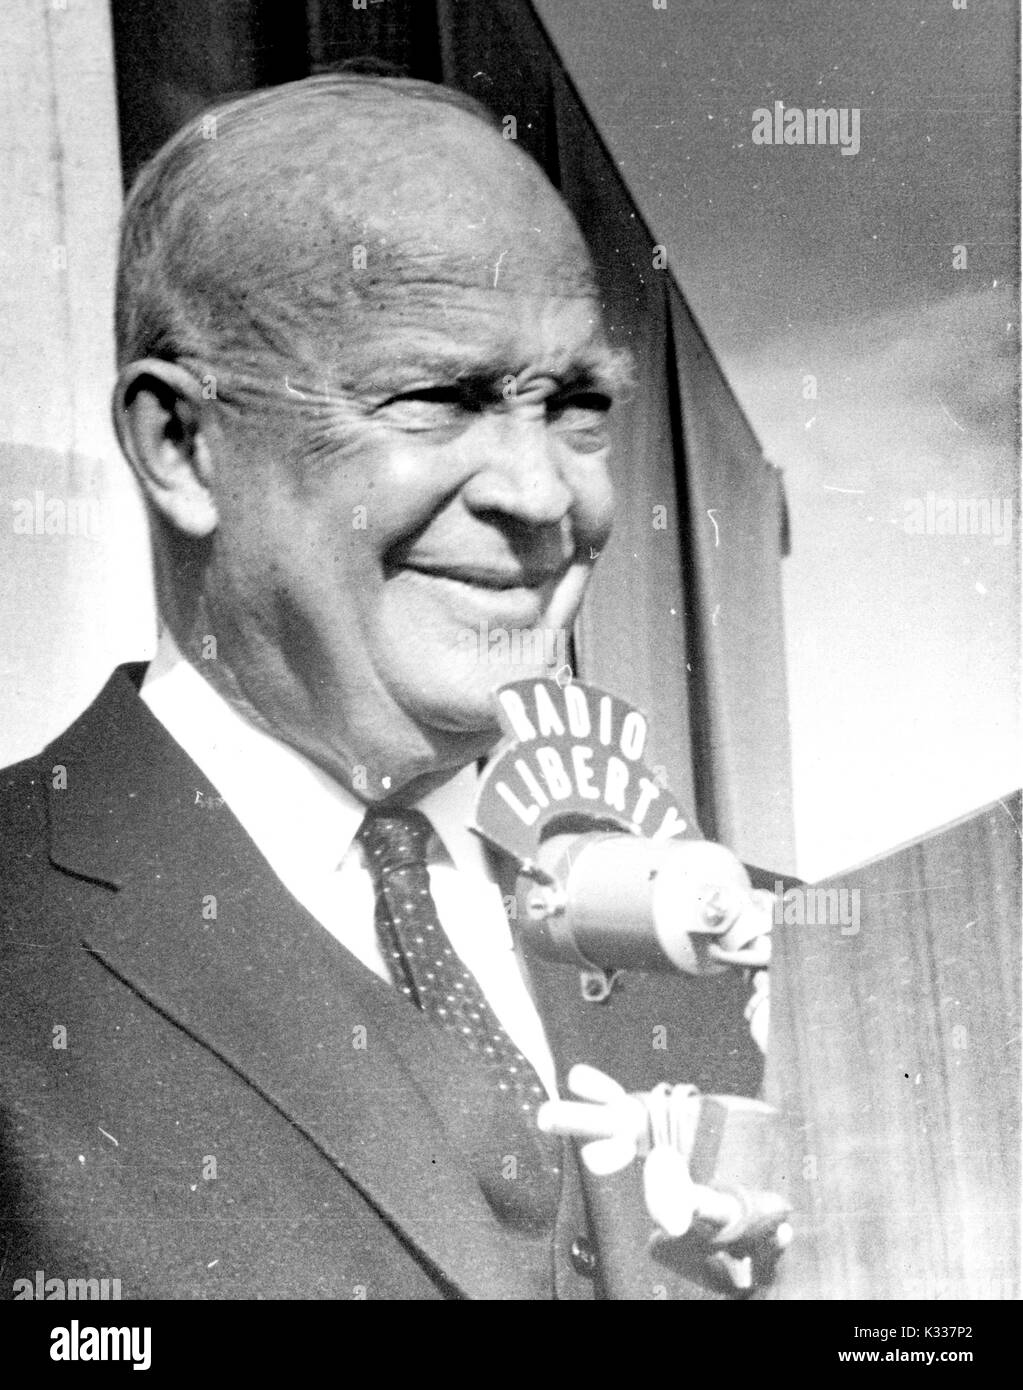 Ehrliches Porträt der 34. Präsident der Vereinigten Staaten von Amerika Dwight D. Eisenhower Sprachaufzeichnung für Radio Liberty, 1963. Stockfoto